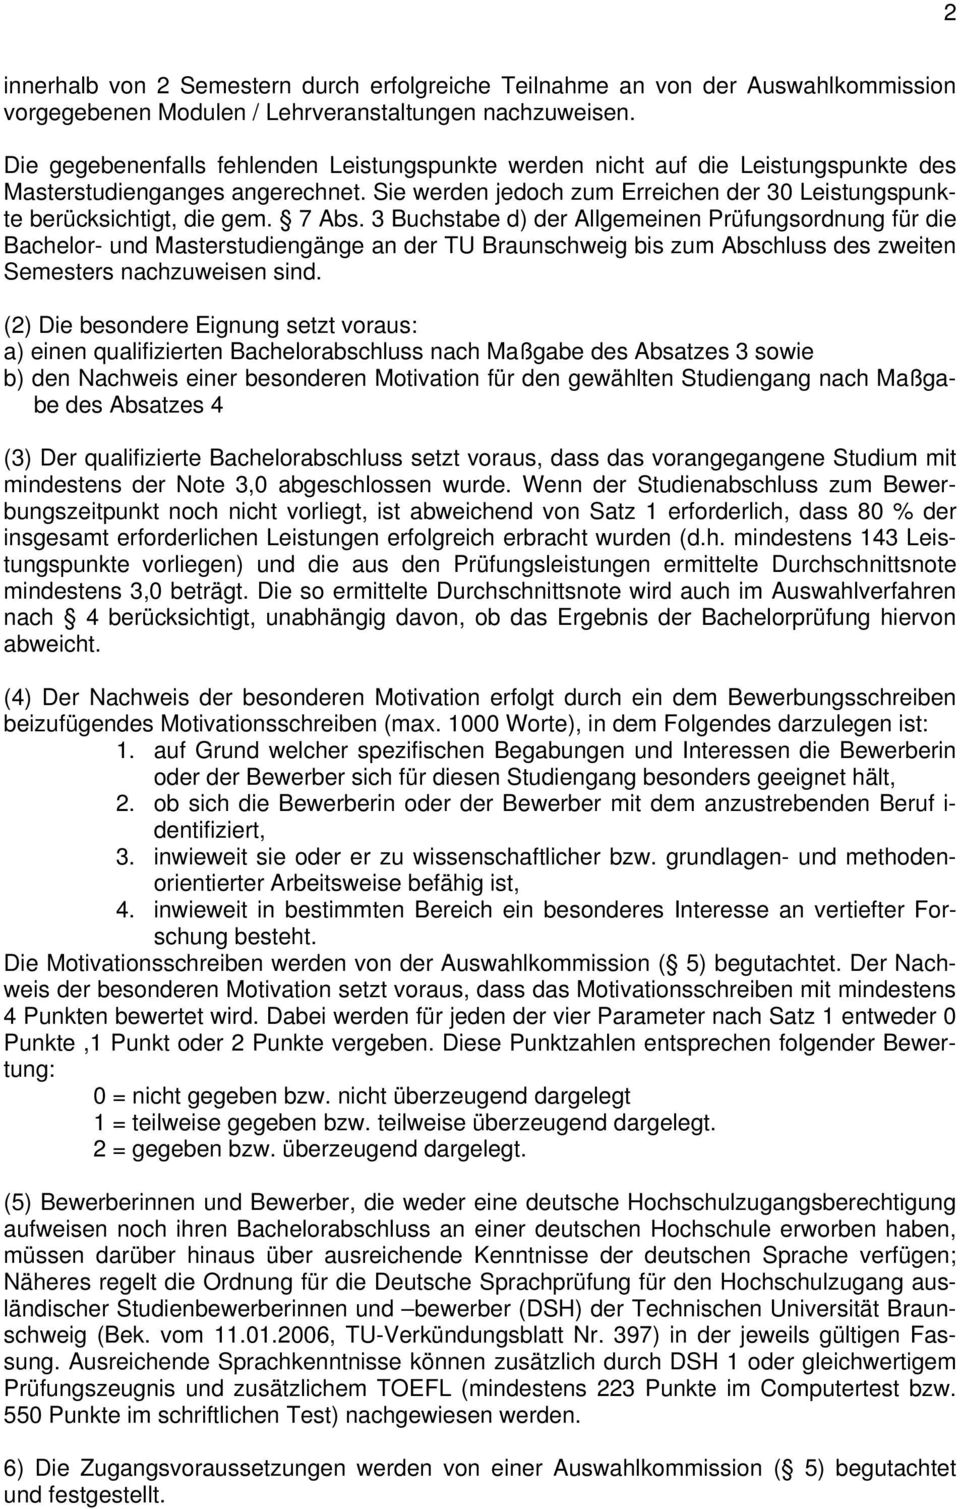 7 Abs. 3 Buchstabe d) der Allgemeinen Prüfungsordnung für die Bachelor- und Masterstudiengänge an der TU Braunschweig bis zum Abschluss des zweiten Semesters nachzuweisen sind.